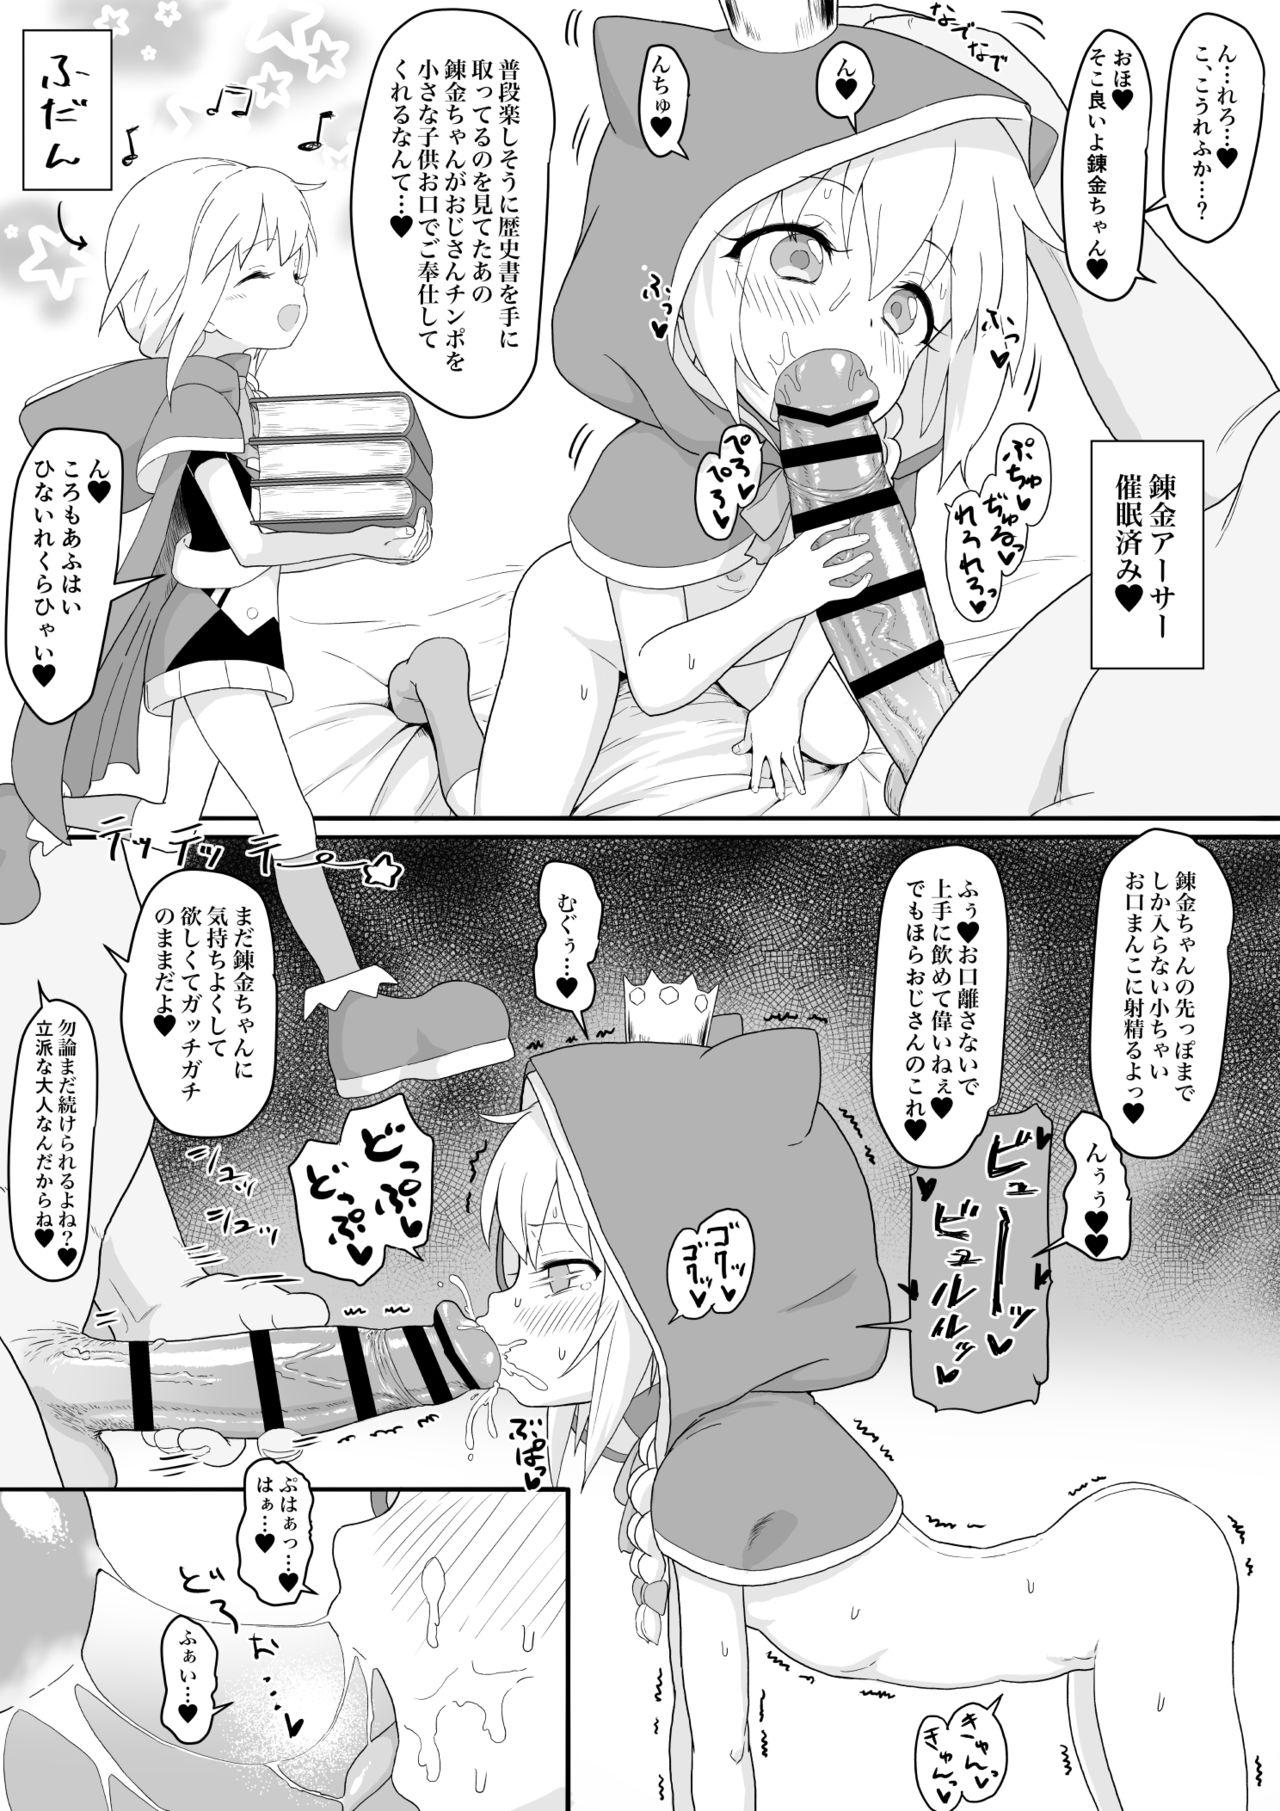 Renkin Arthur-chan 4 Page Manga 1